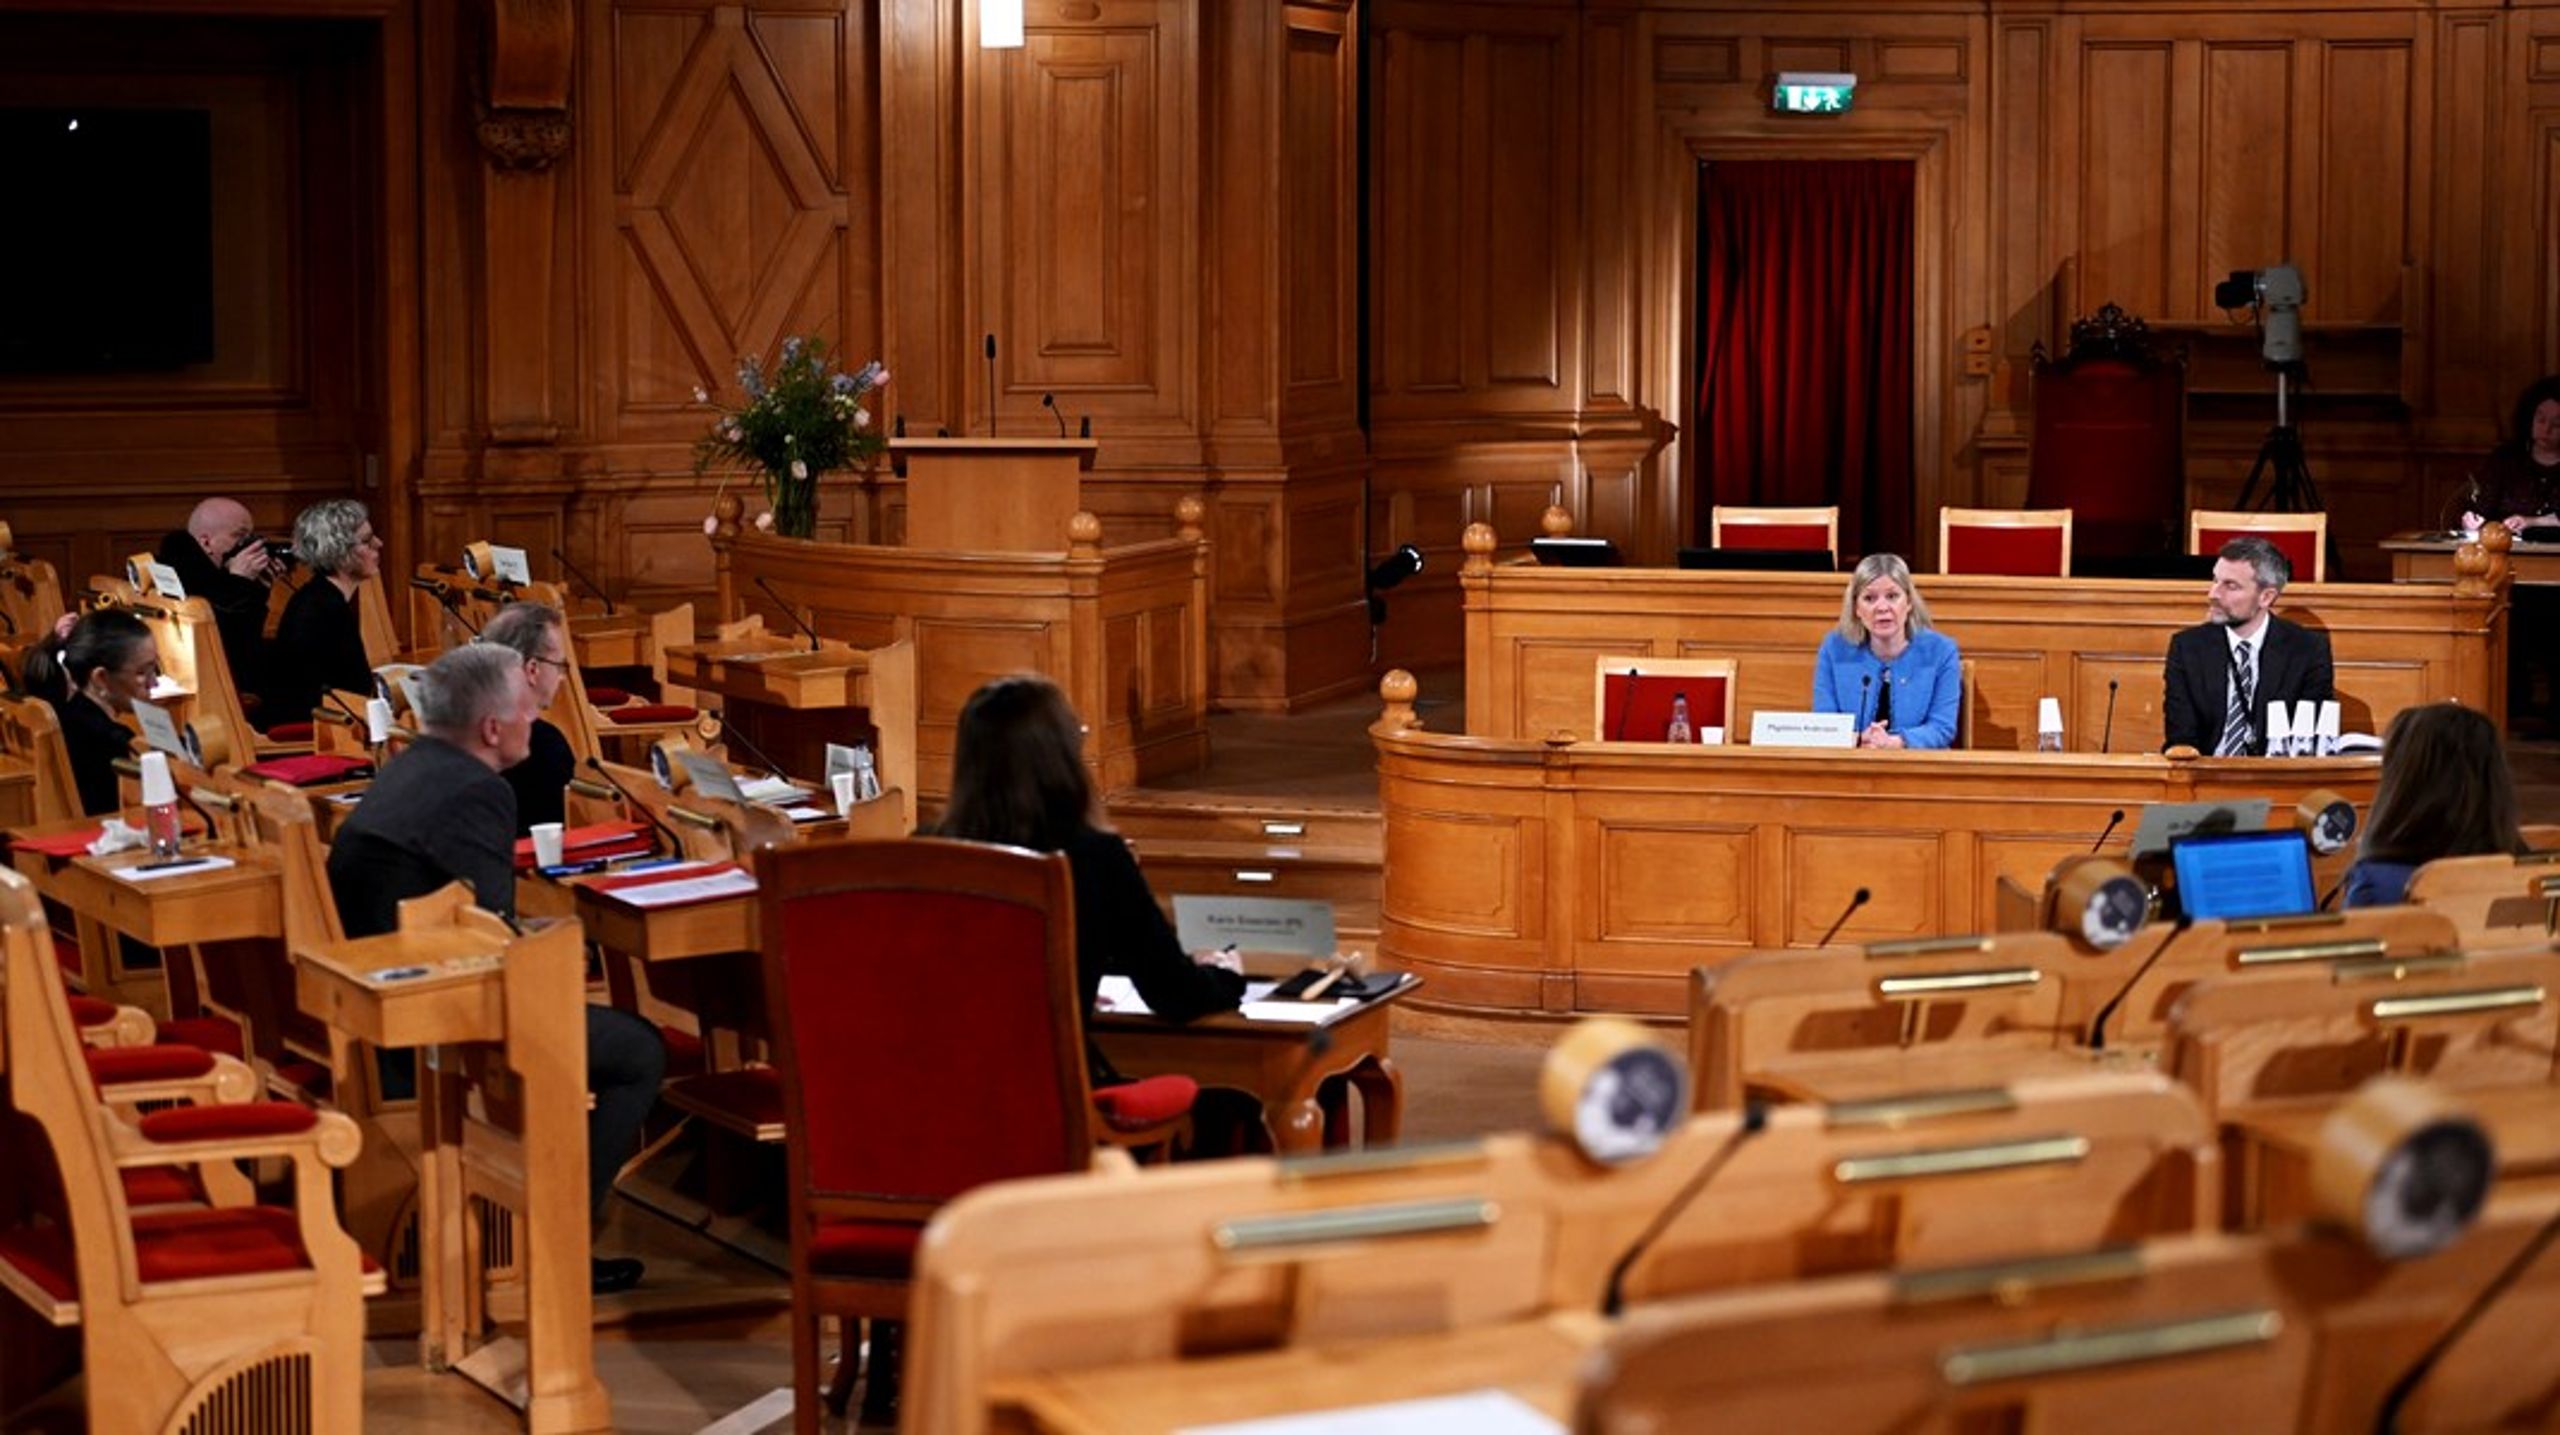 Våren 2022 var statsminister Magdalena Andersson (S) på utfrågning hos KU. Hon är anmäld även i denna runda.